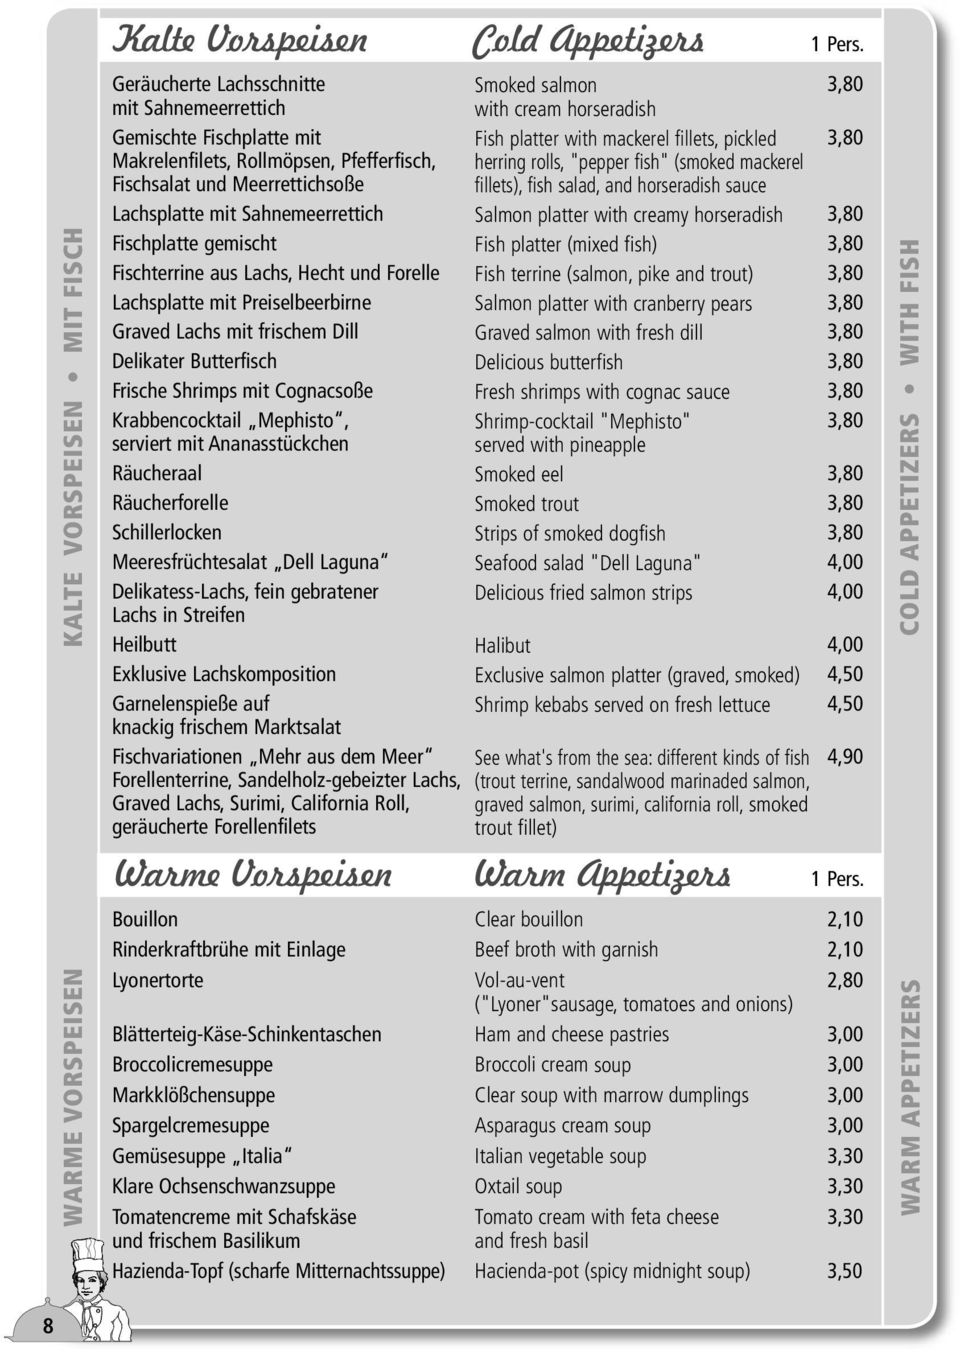 Pfefferfisch, Fischsalat und Meerrettichsoße Lachsplatte mit Sahnemeerrettich herring rolls, "pepper fish" (smoked mackerel fillets), fish salad, and horseradish sauce Salmon platter with creamy